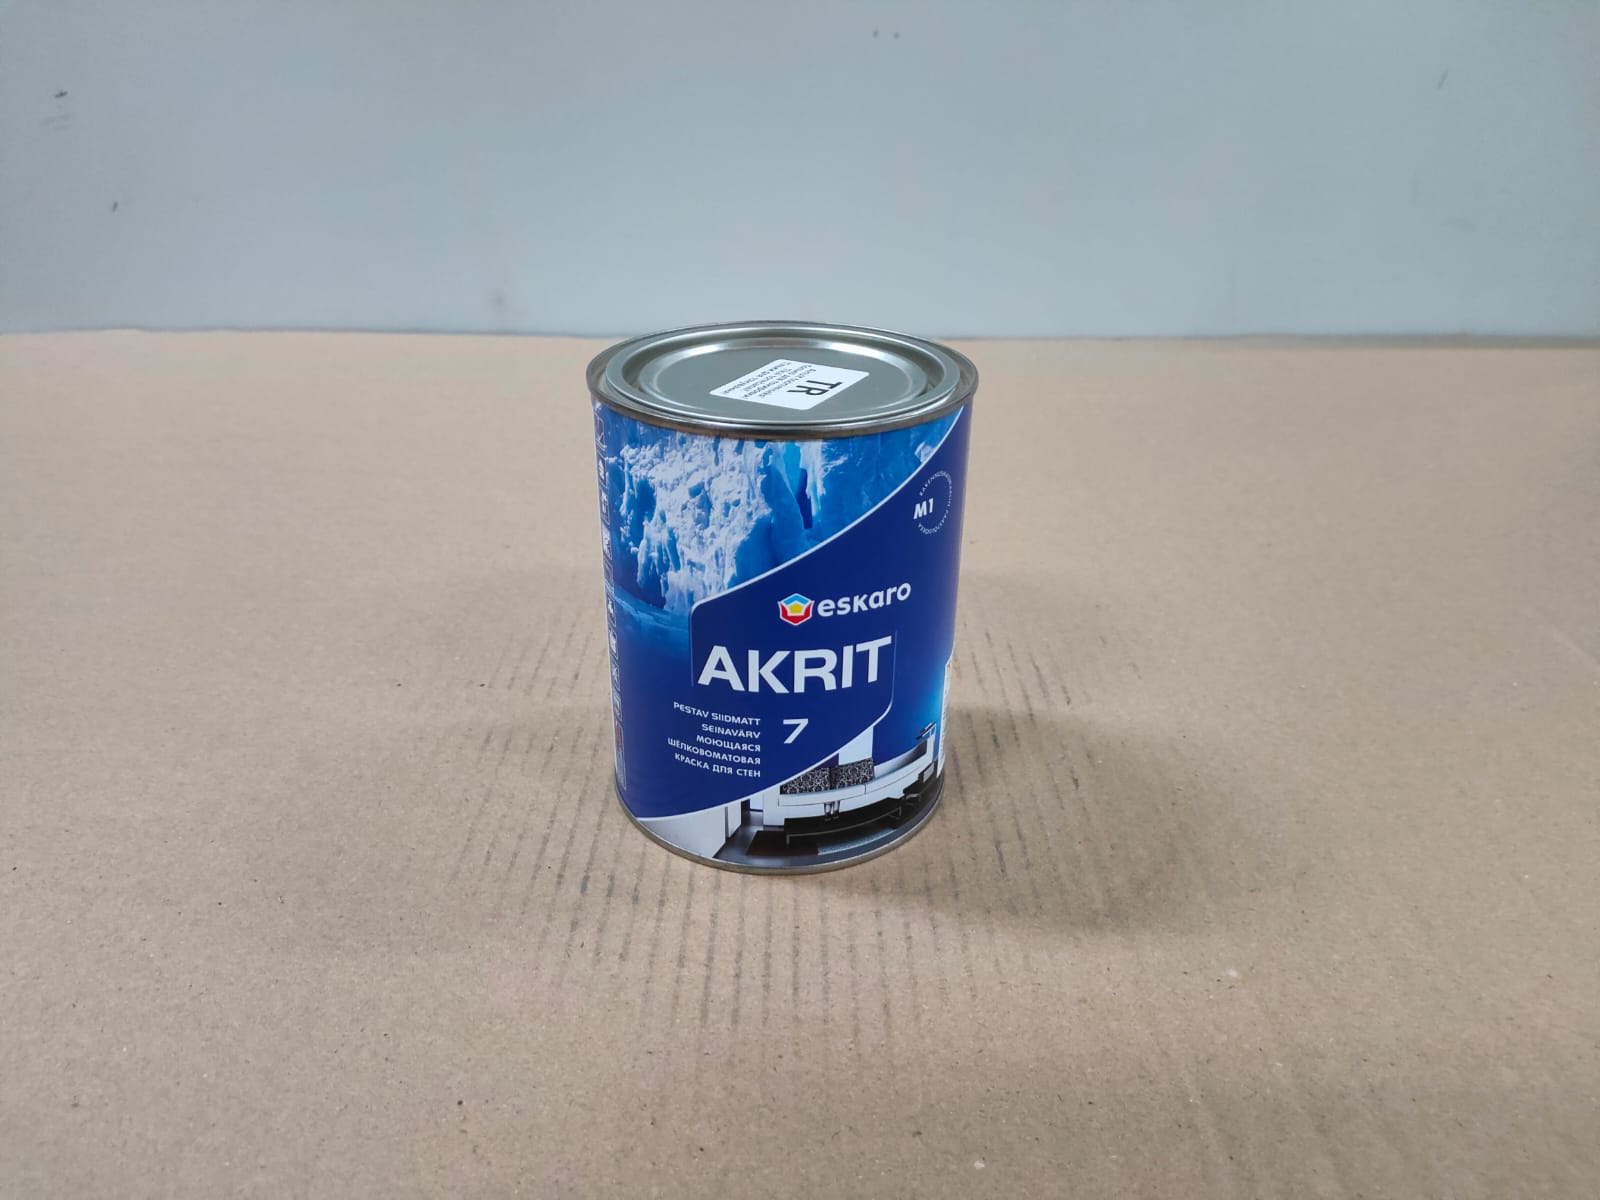 Моющаяся шелковоматовая краска для стен Eskaro Akrit 7 (База TR - прозрачная) 2.7 л								